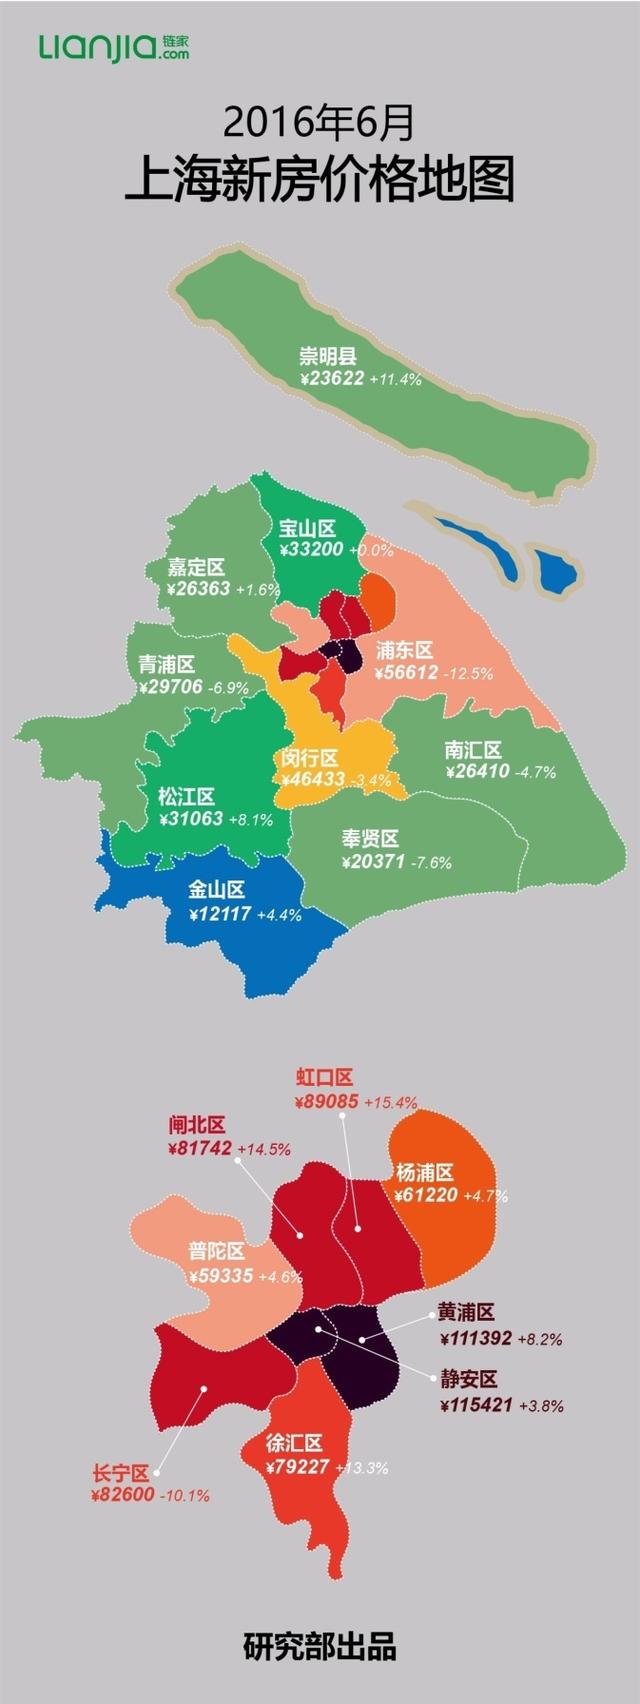 6月上海最新房价地图出炉 看看哪些区域跌了!_房产上海站_腾讯网